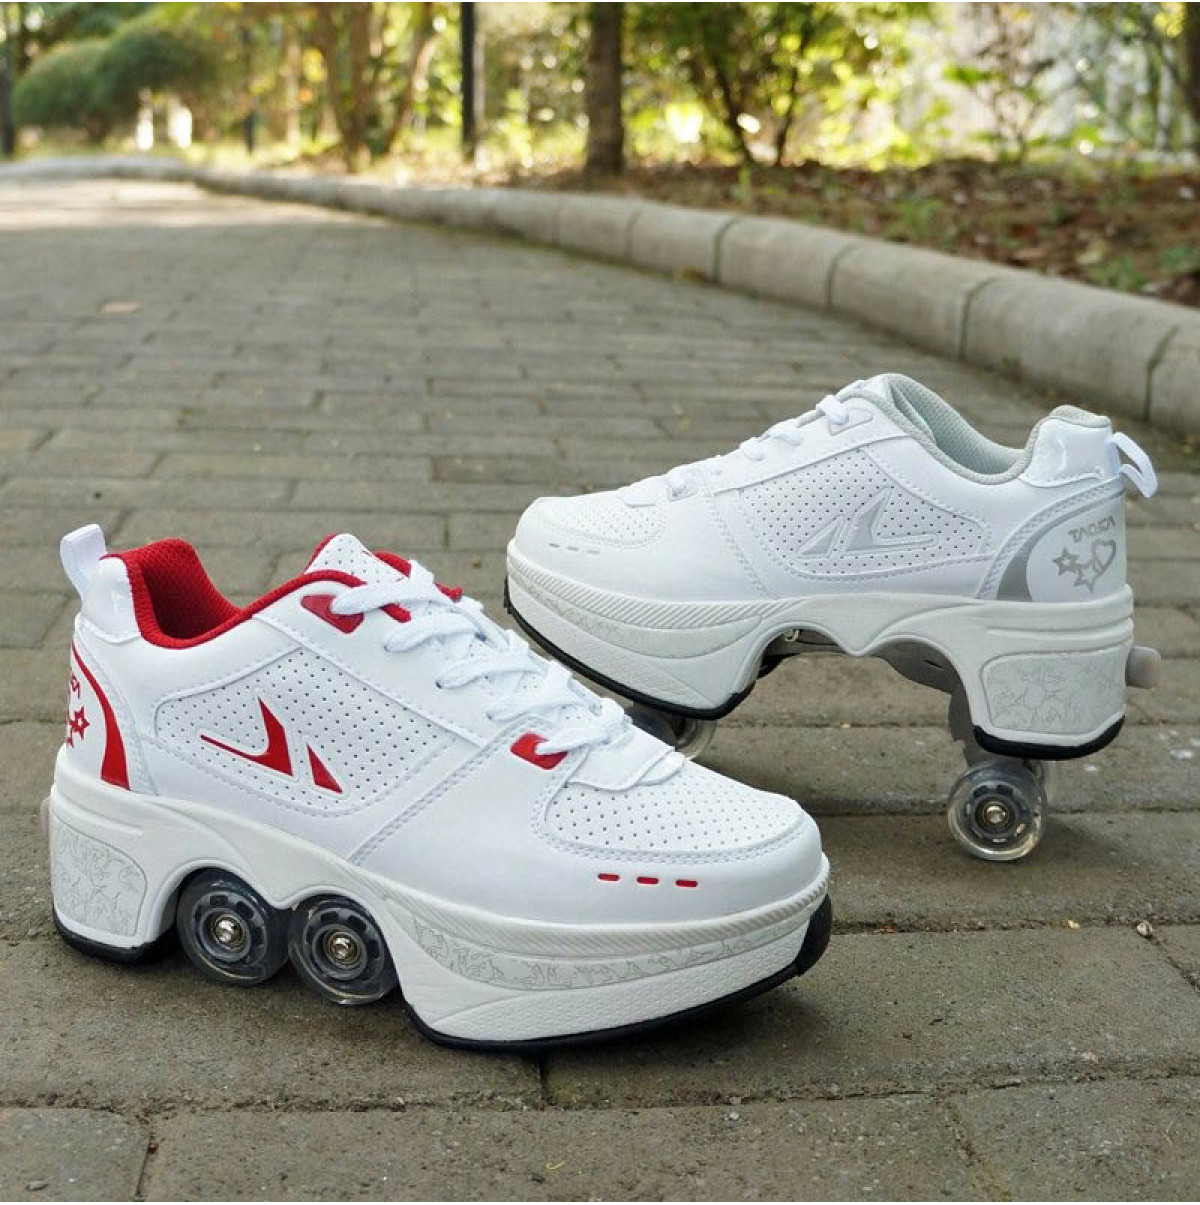 Deformation Roller Skates Shoes